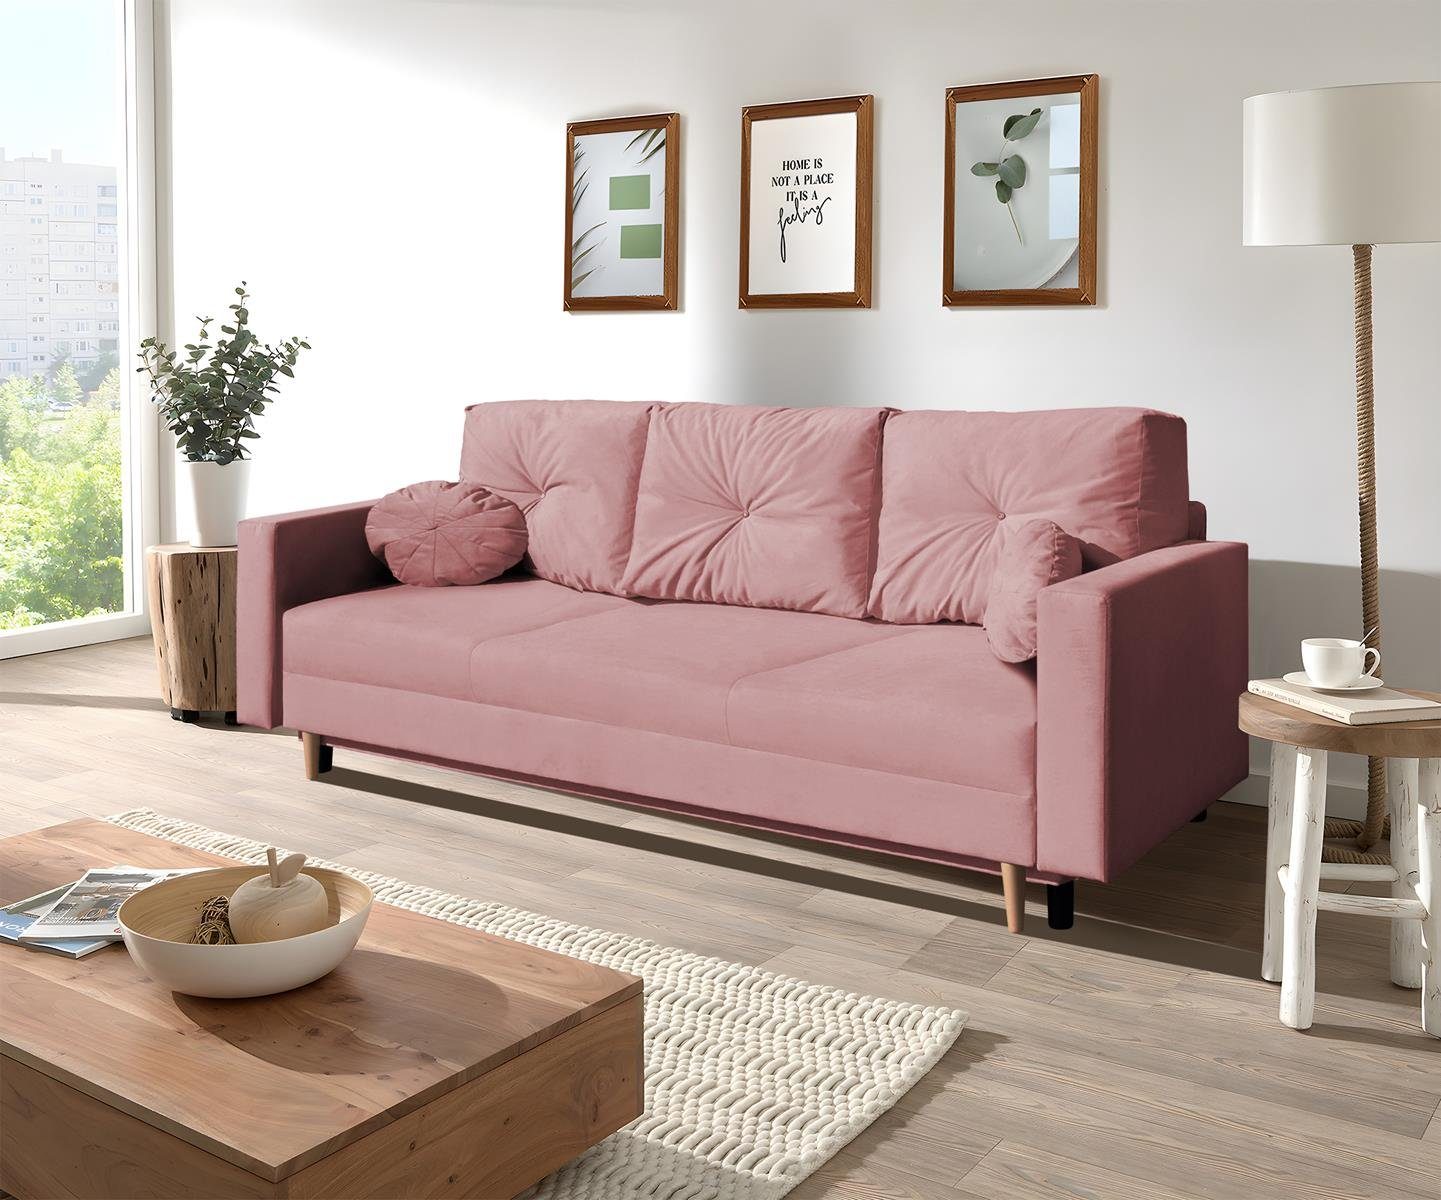 Beautysofa 3-Sitzer MILAN, 3-Sitzer Bettkasten, Sofa Wellenunterfederung, Relaxfunktion Rosa (trinity skandinavisches mit 23) Holzbeine, Design